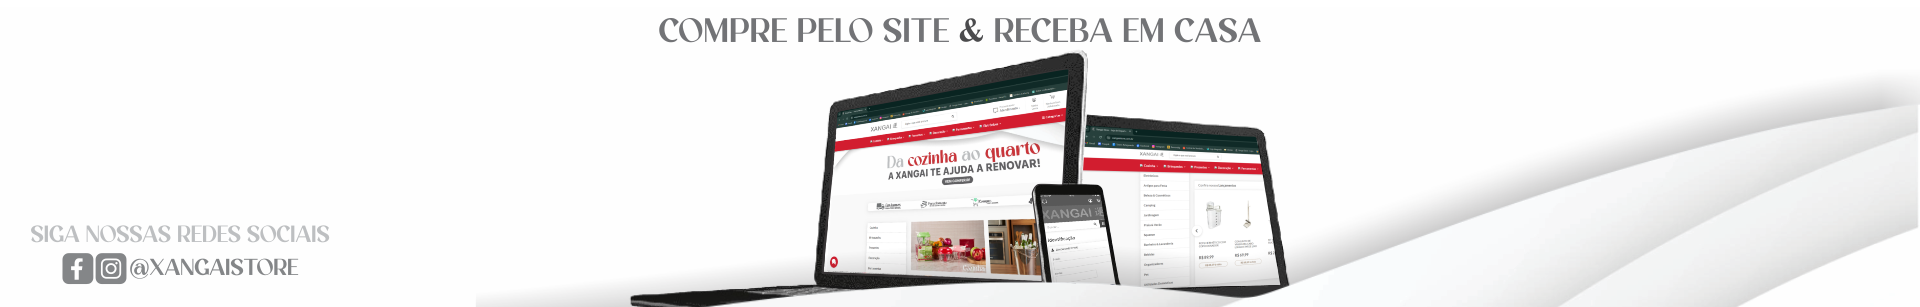 Compre_pelo_Site